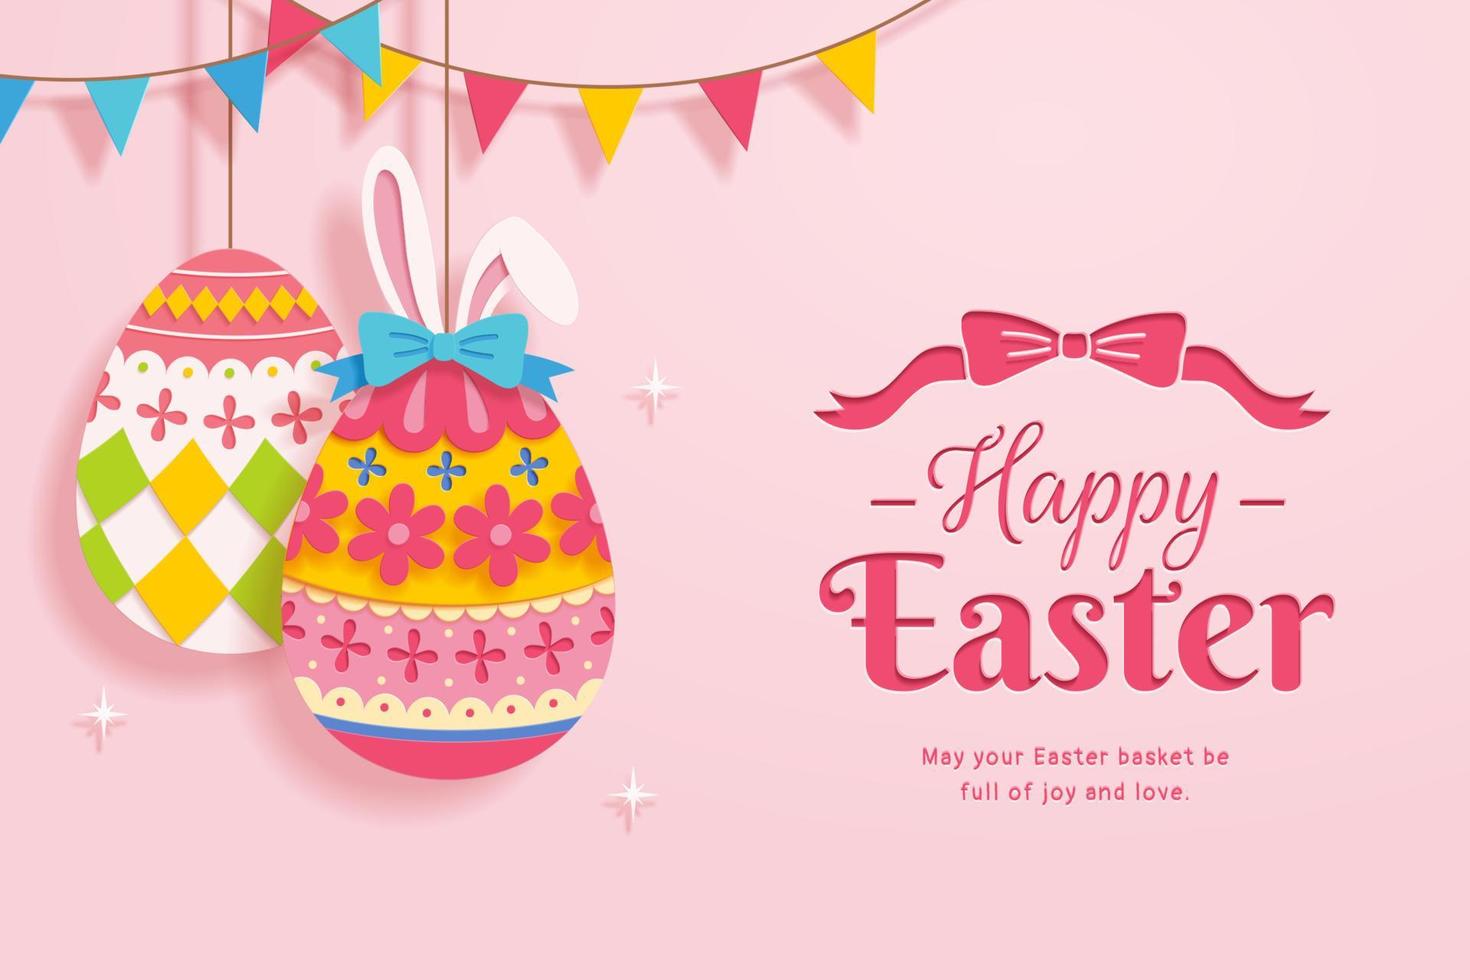 contento Pascua de Resurrección saludo tarjeta en papel cortar diseño. Pascua de Resurrección huevos decorado con floral patrones y conejito orejas. vector